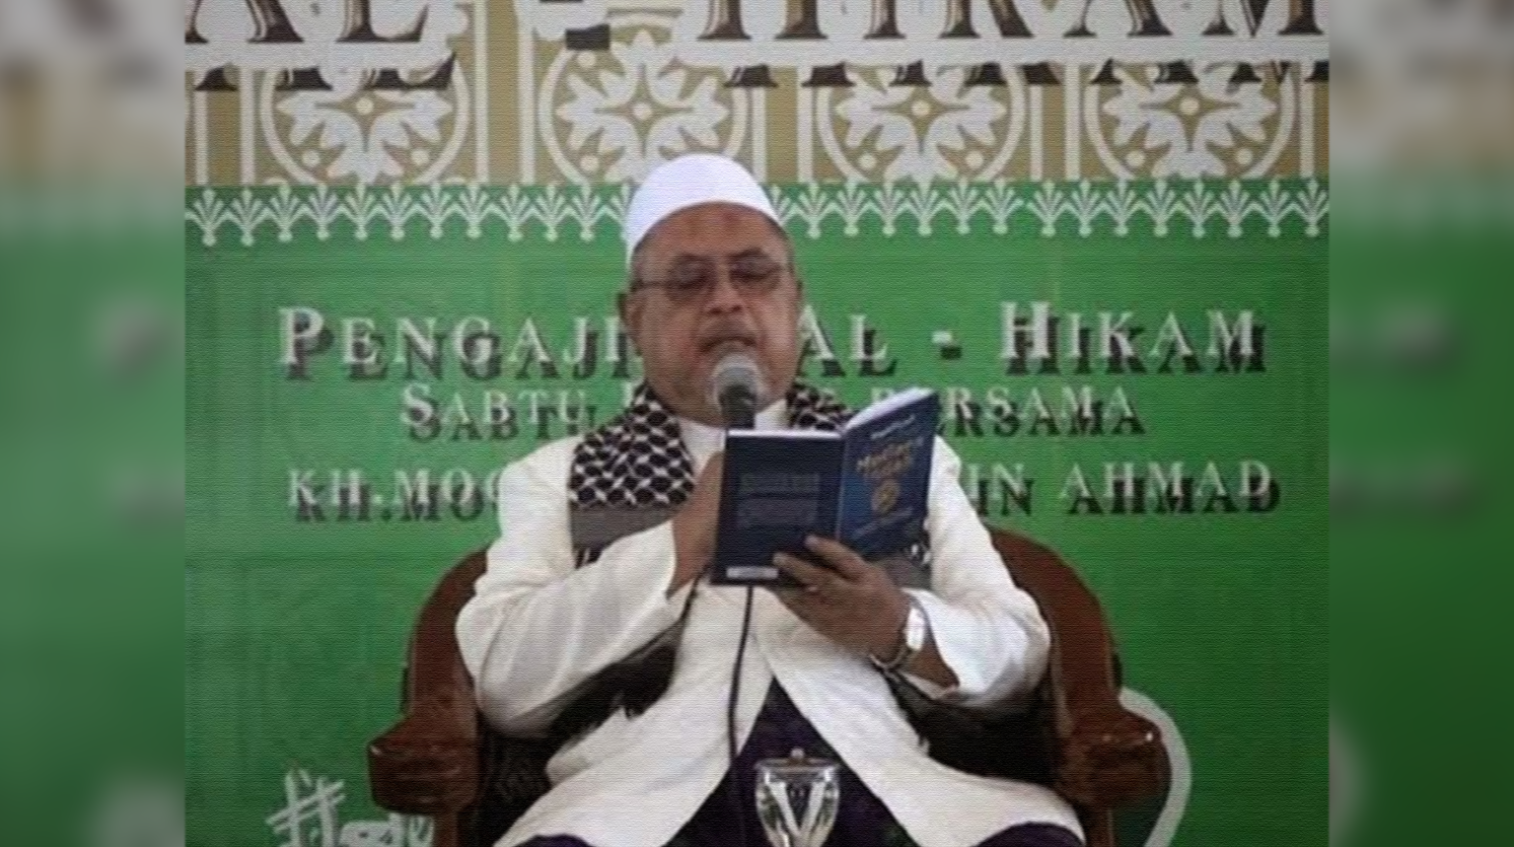 KH Muhammad Djamaludin Ahmad